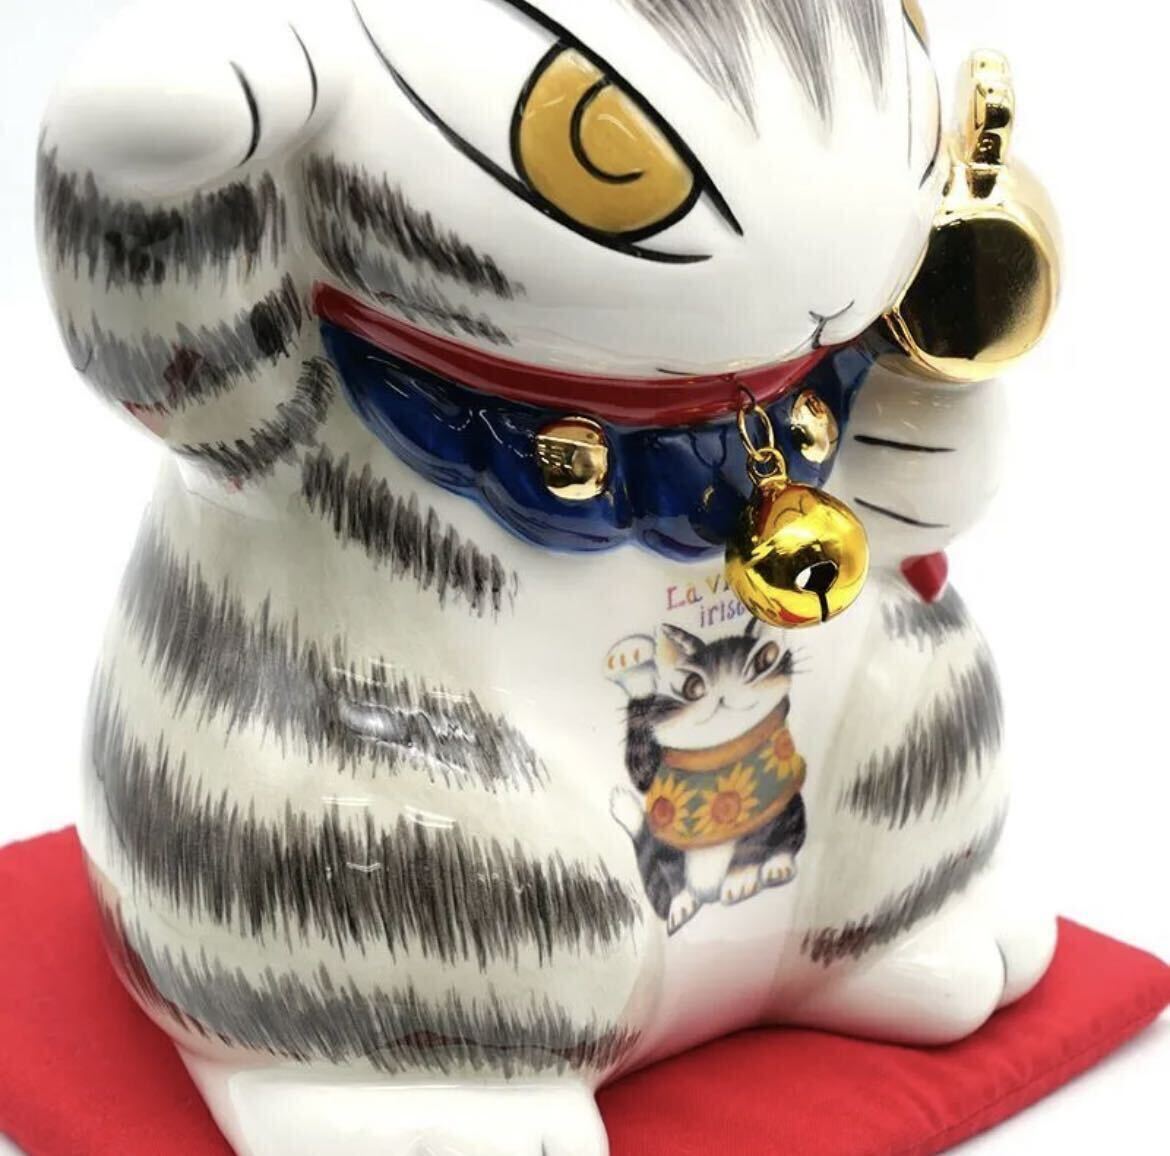 wa...-.. cat. dayan maneki-neko savings box luck with money ..940057 ornament stylish ..... zabuton attaching new goods * unopened regular price :16,830 jpy 